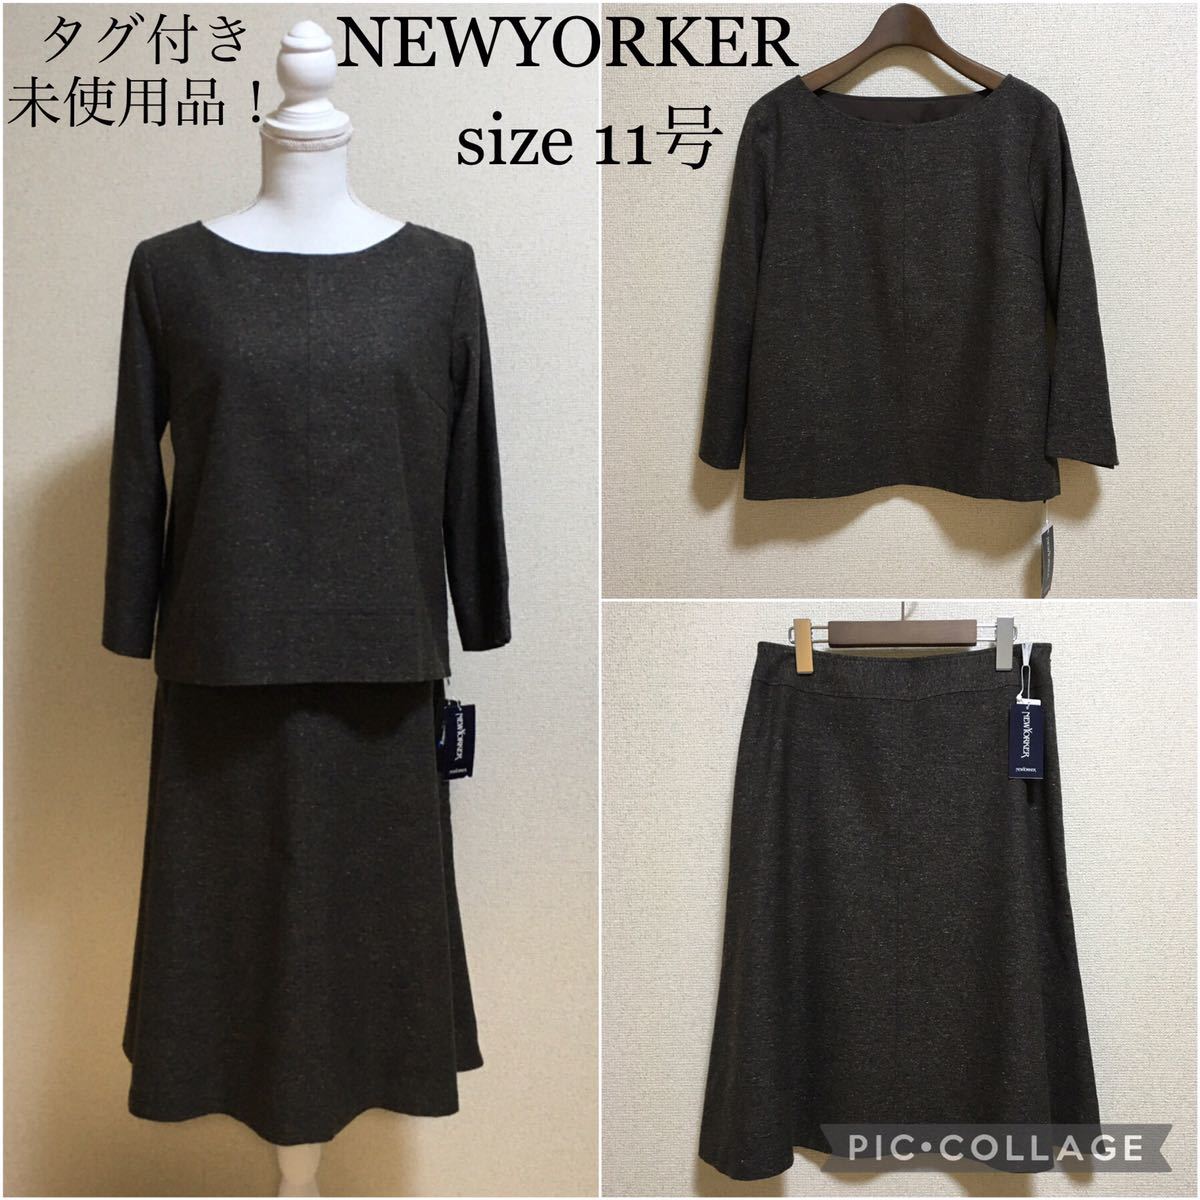 【タグ付き未使用】NEWYORKER* スカートスーツ 11号 絹混 卒業式 セットアップスーツ